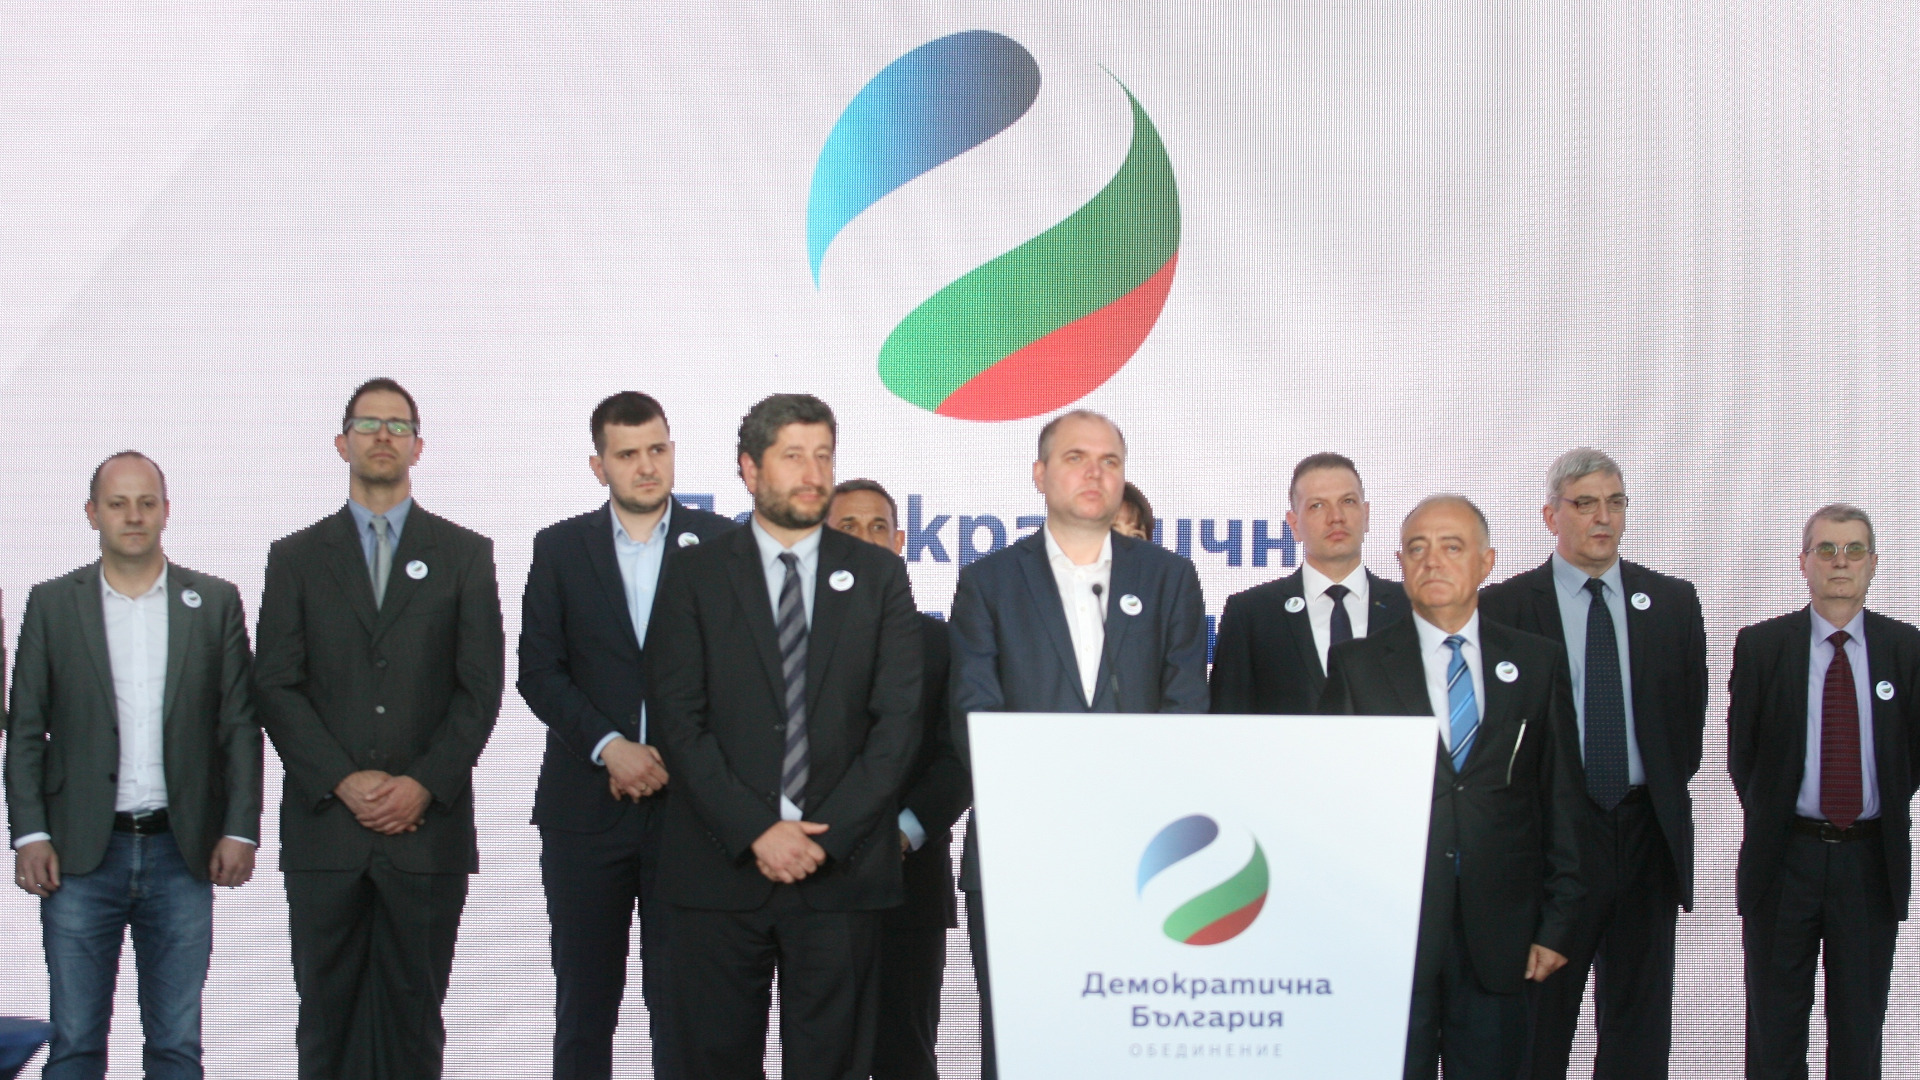 Съюз Демократична България настоява правителството да приеме решение във връзка